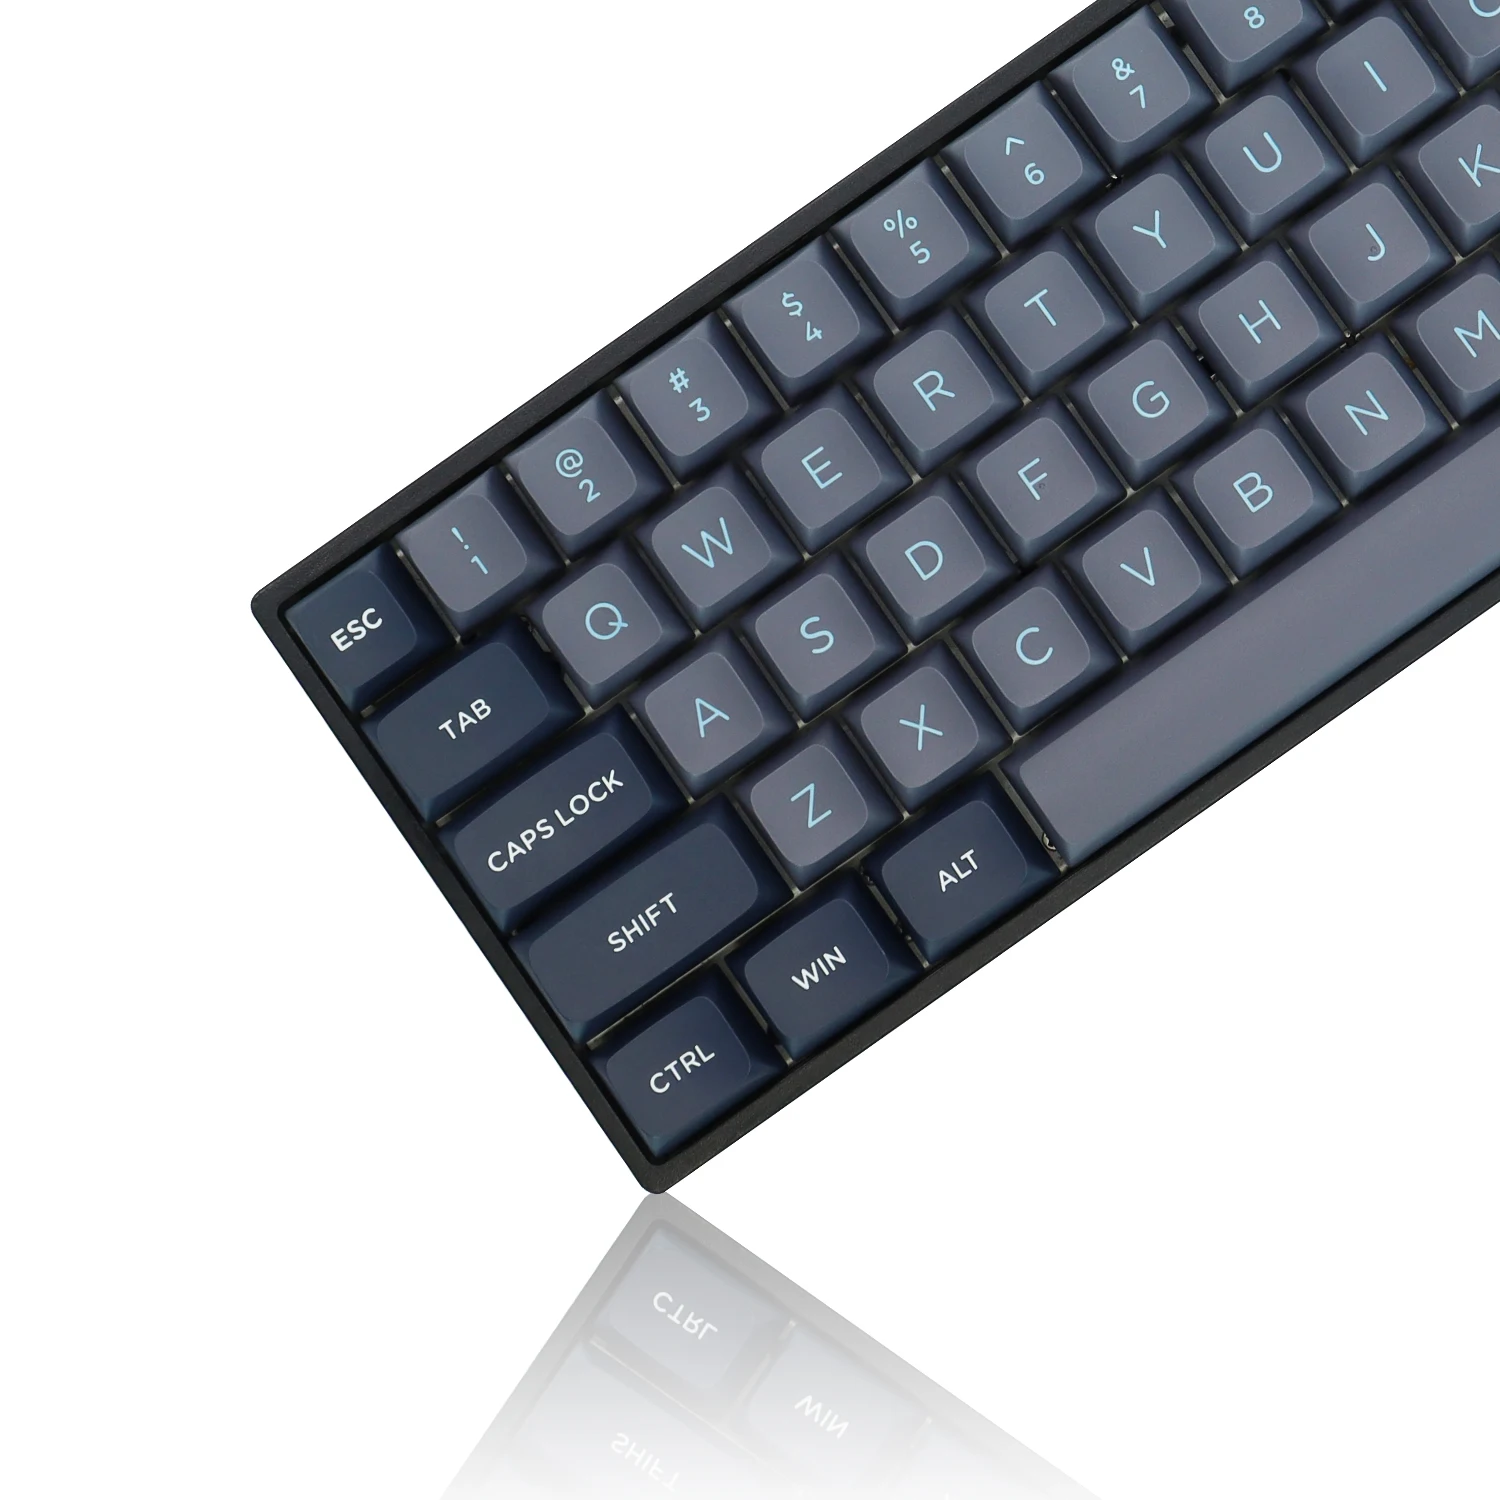 

Клавиатура с 189 клавишами ISA профиль под заказ колпачки для клавиш Double Shot PBT колпачки для клавиш Cherry Gateron MX переключатели механические игровые клавиатуры